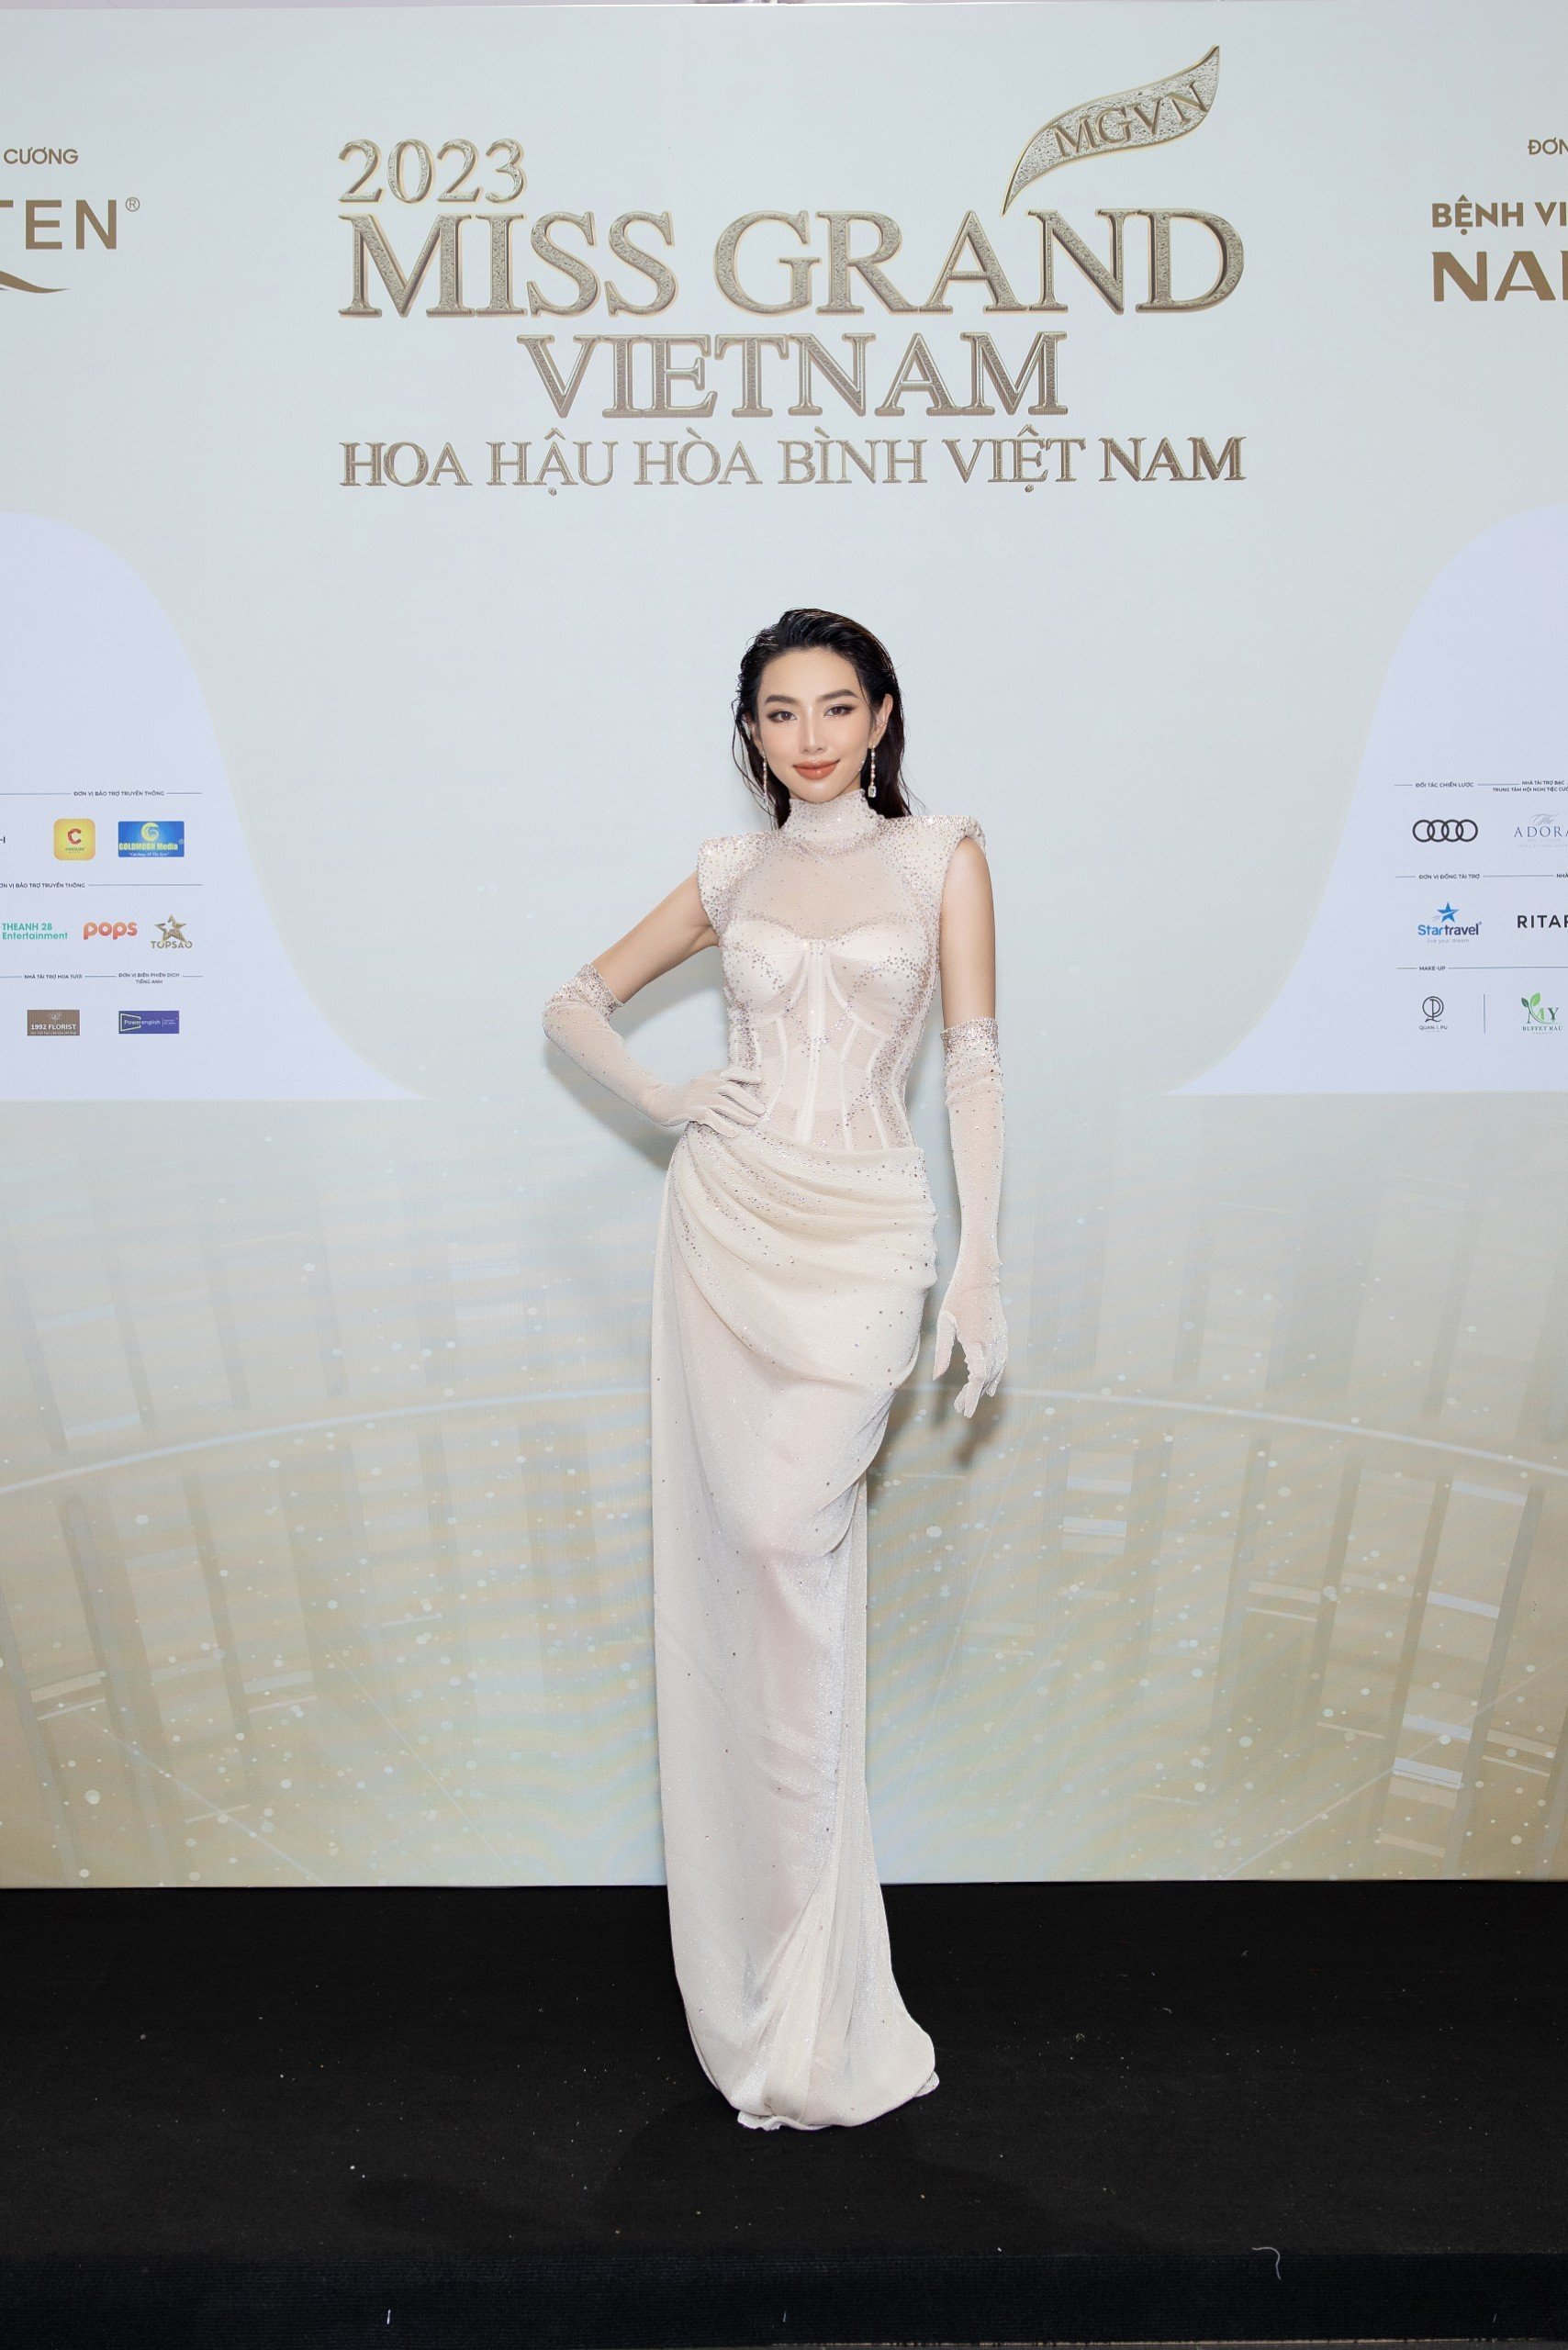 Thảm đỏ chung khảo toàn quốc Miss Grand Vietnam 2023: Huỳnh Minh Kiên khoe đường cong, Thuỳ Tiên kín đáo vẫn đẹp - ảnh 2